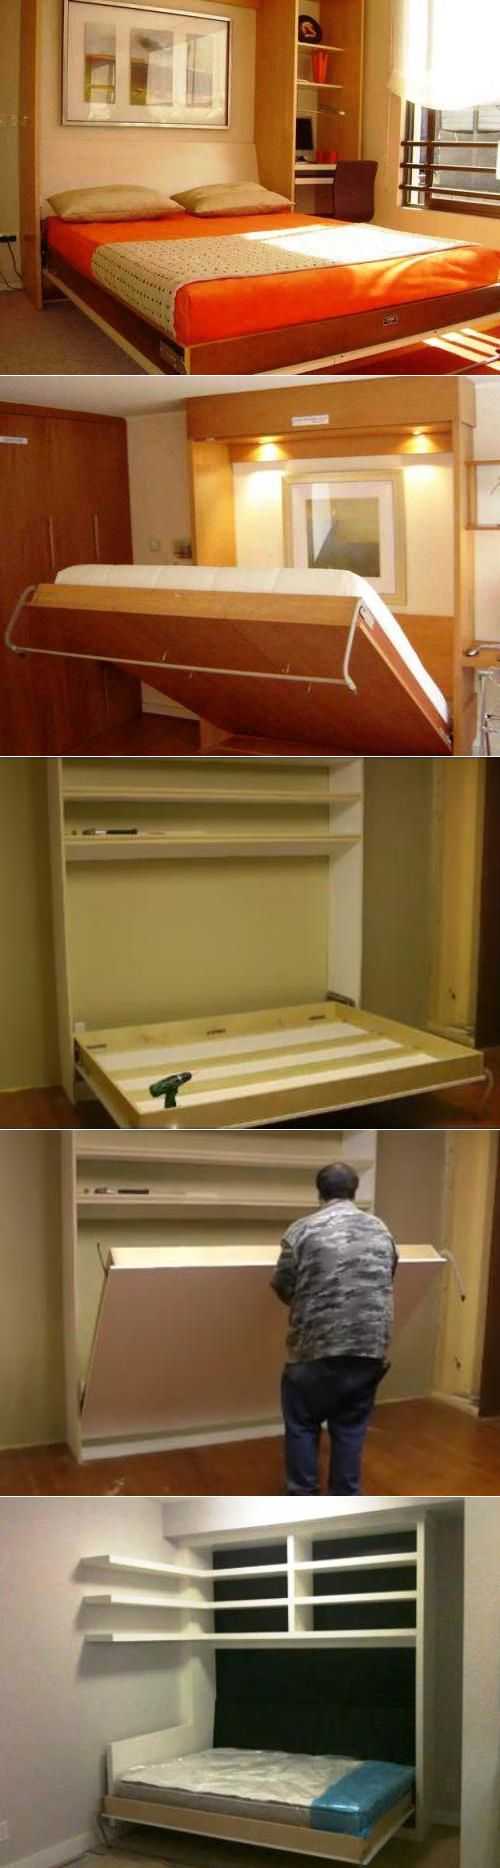 Откидная кровать, встроенная в шкаф